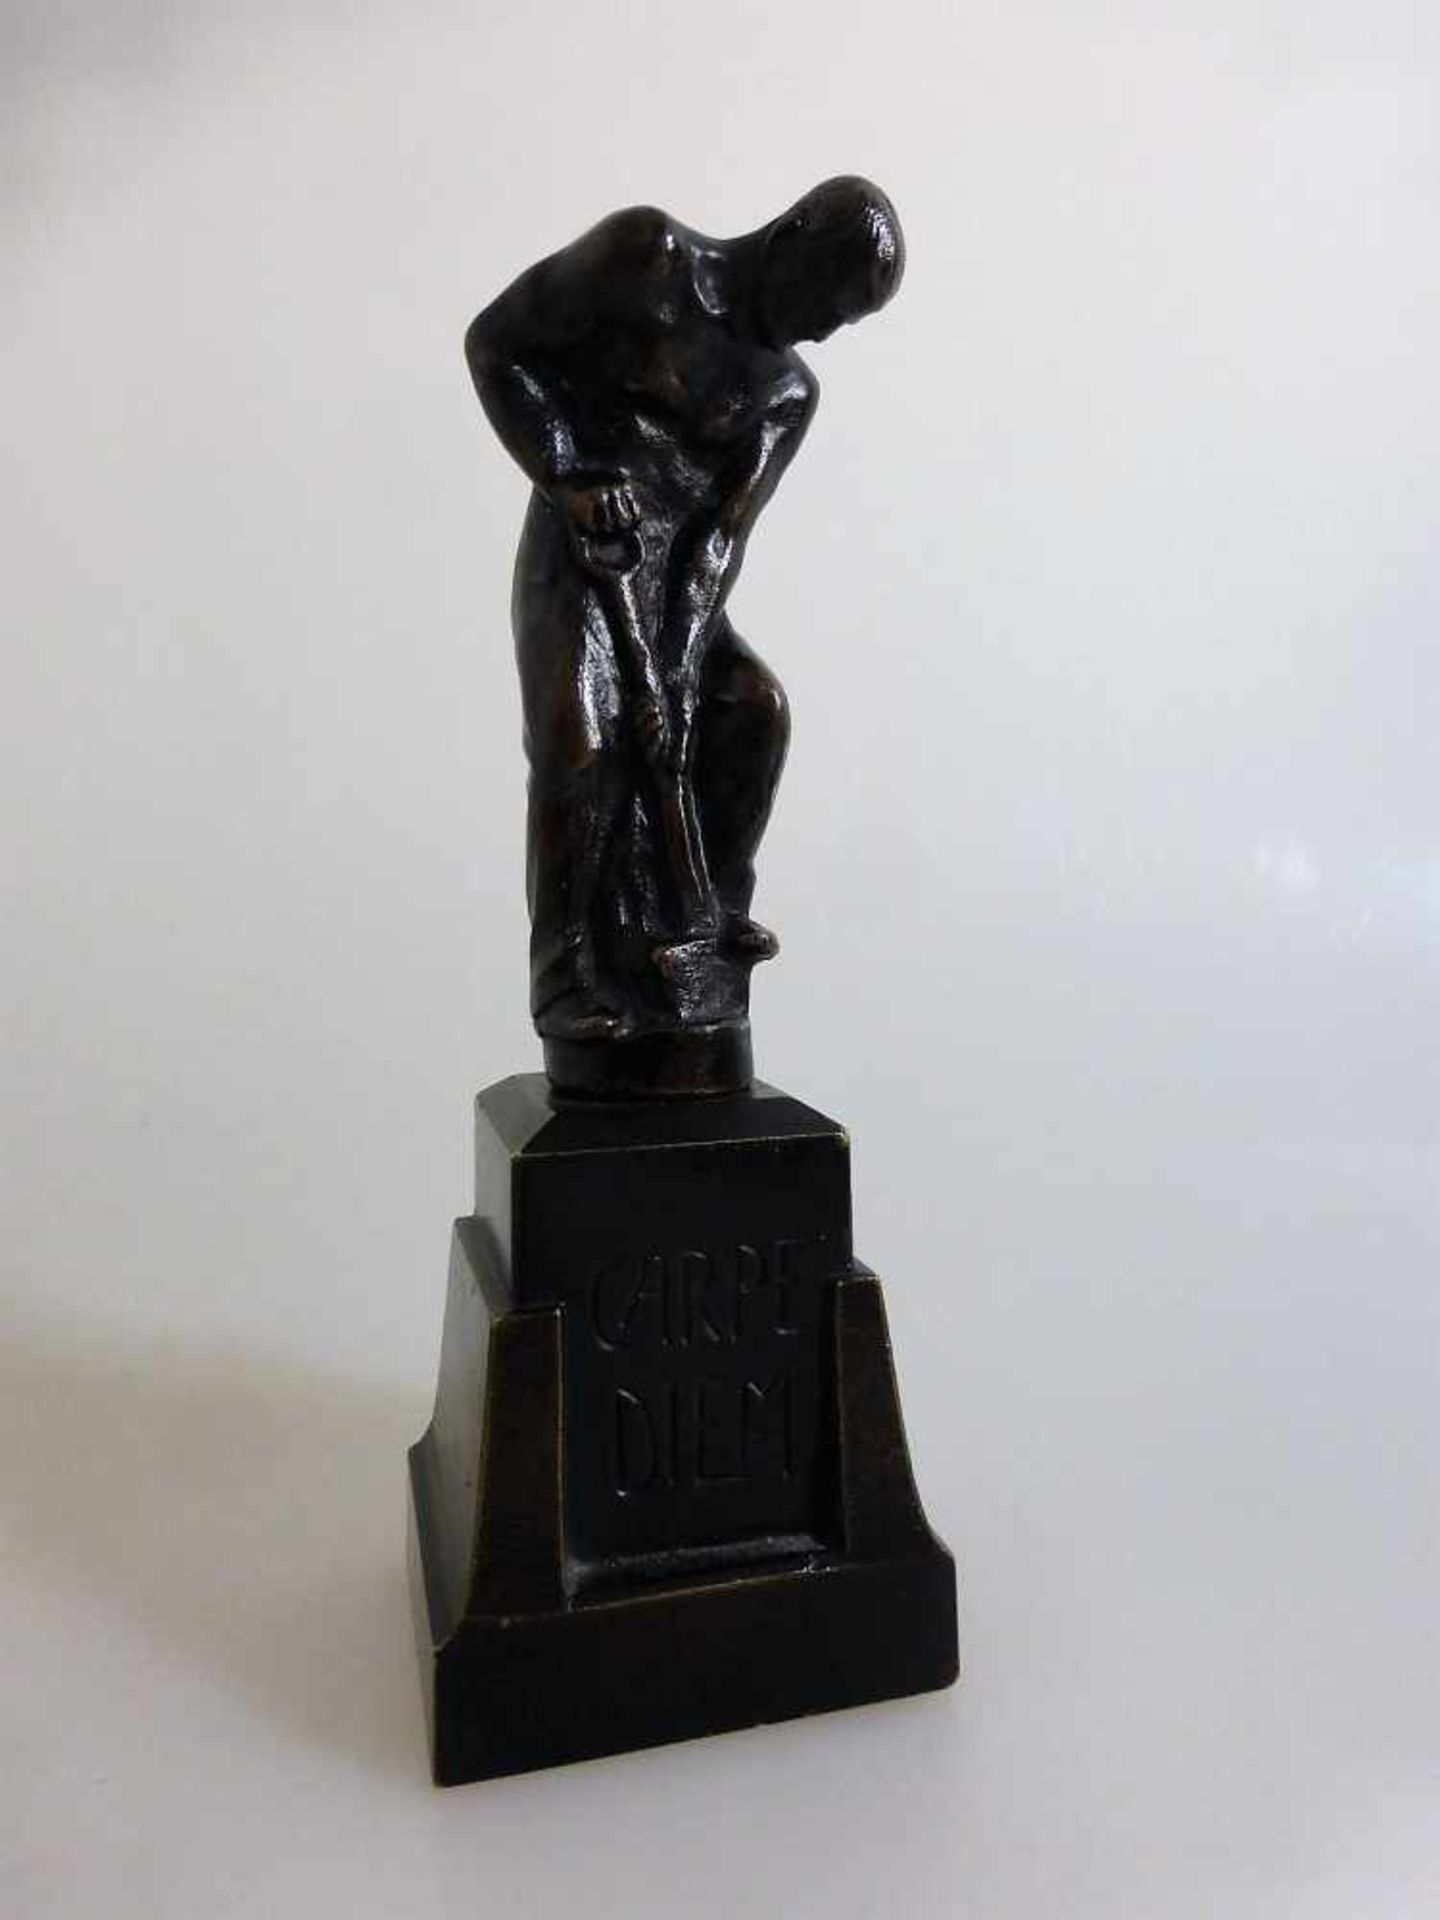 Morin, Georges (1874 - 1950 Berlin), Bronzefigur eines Landarbeiters, mit einem Spaten in